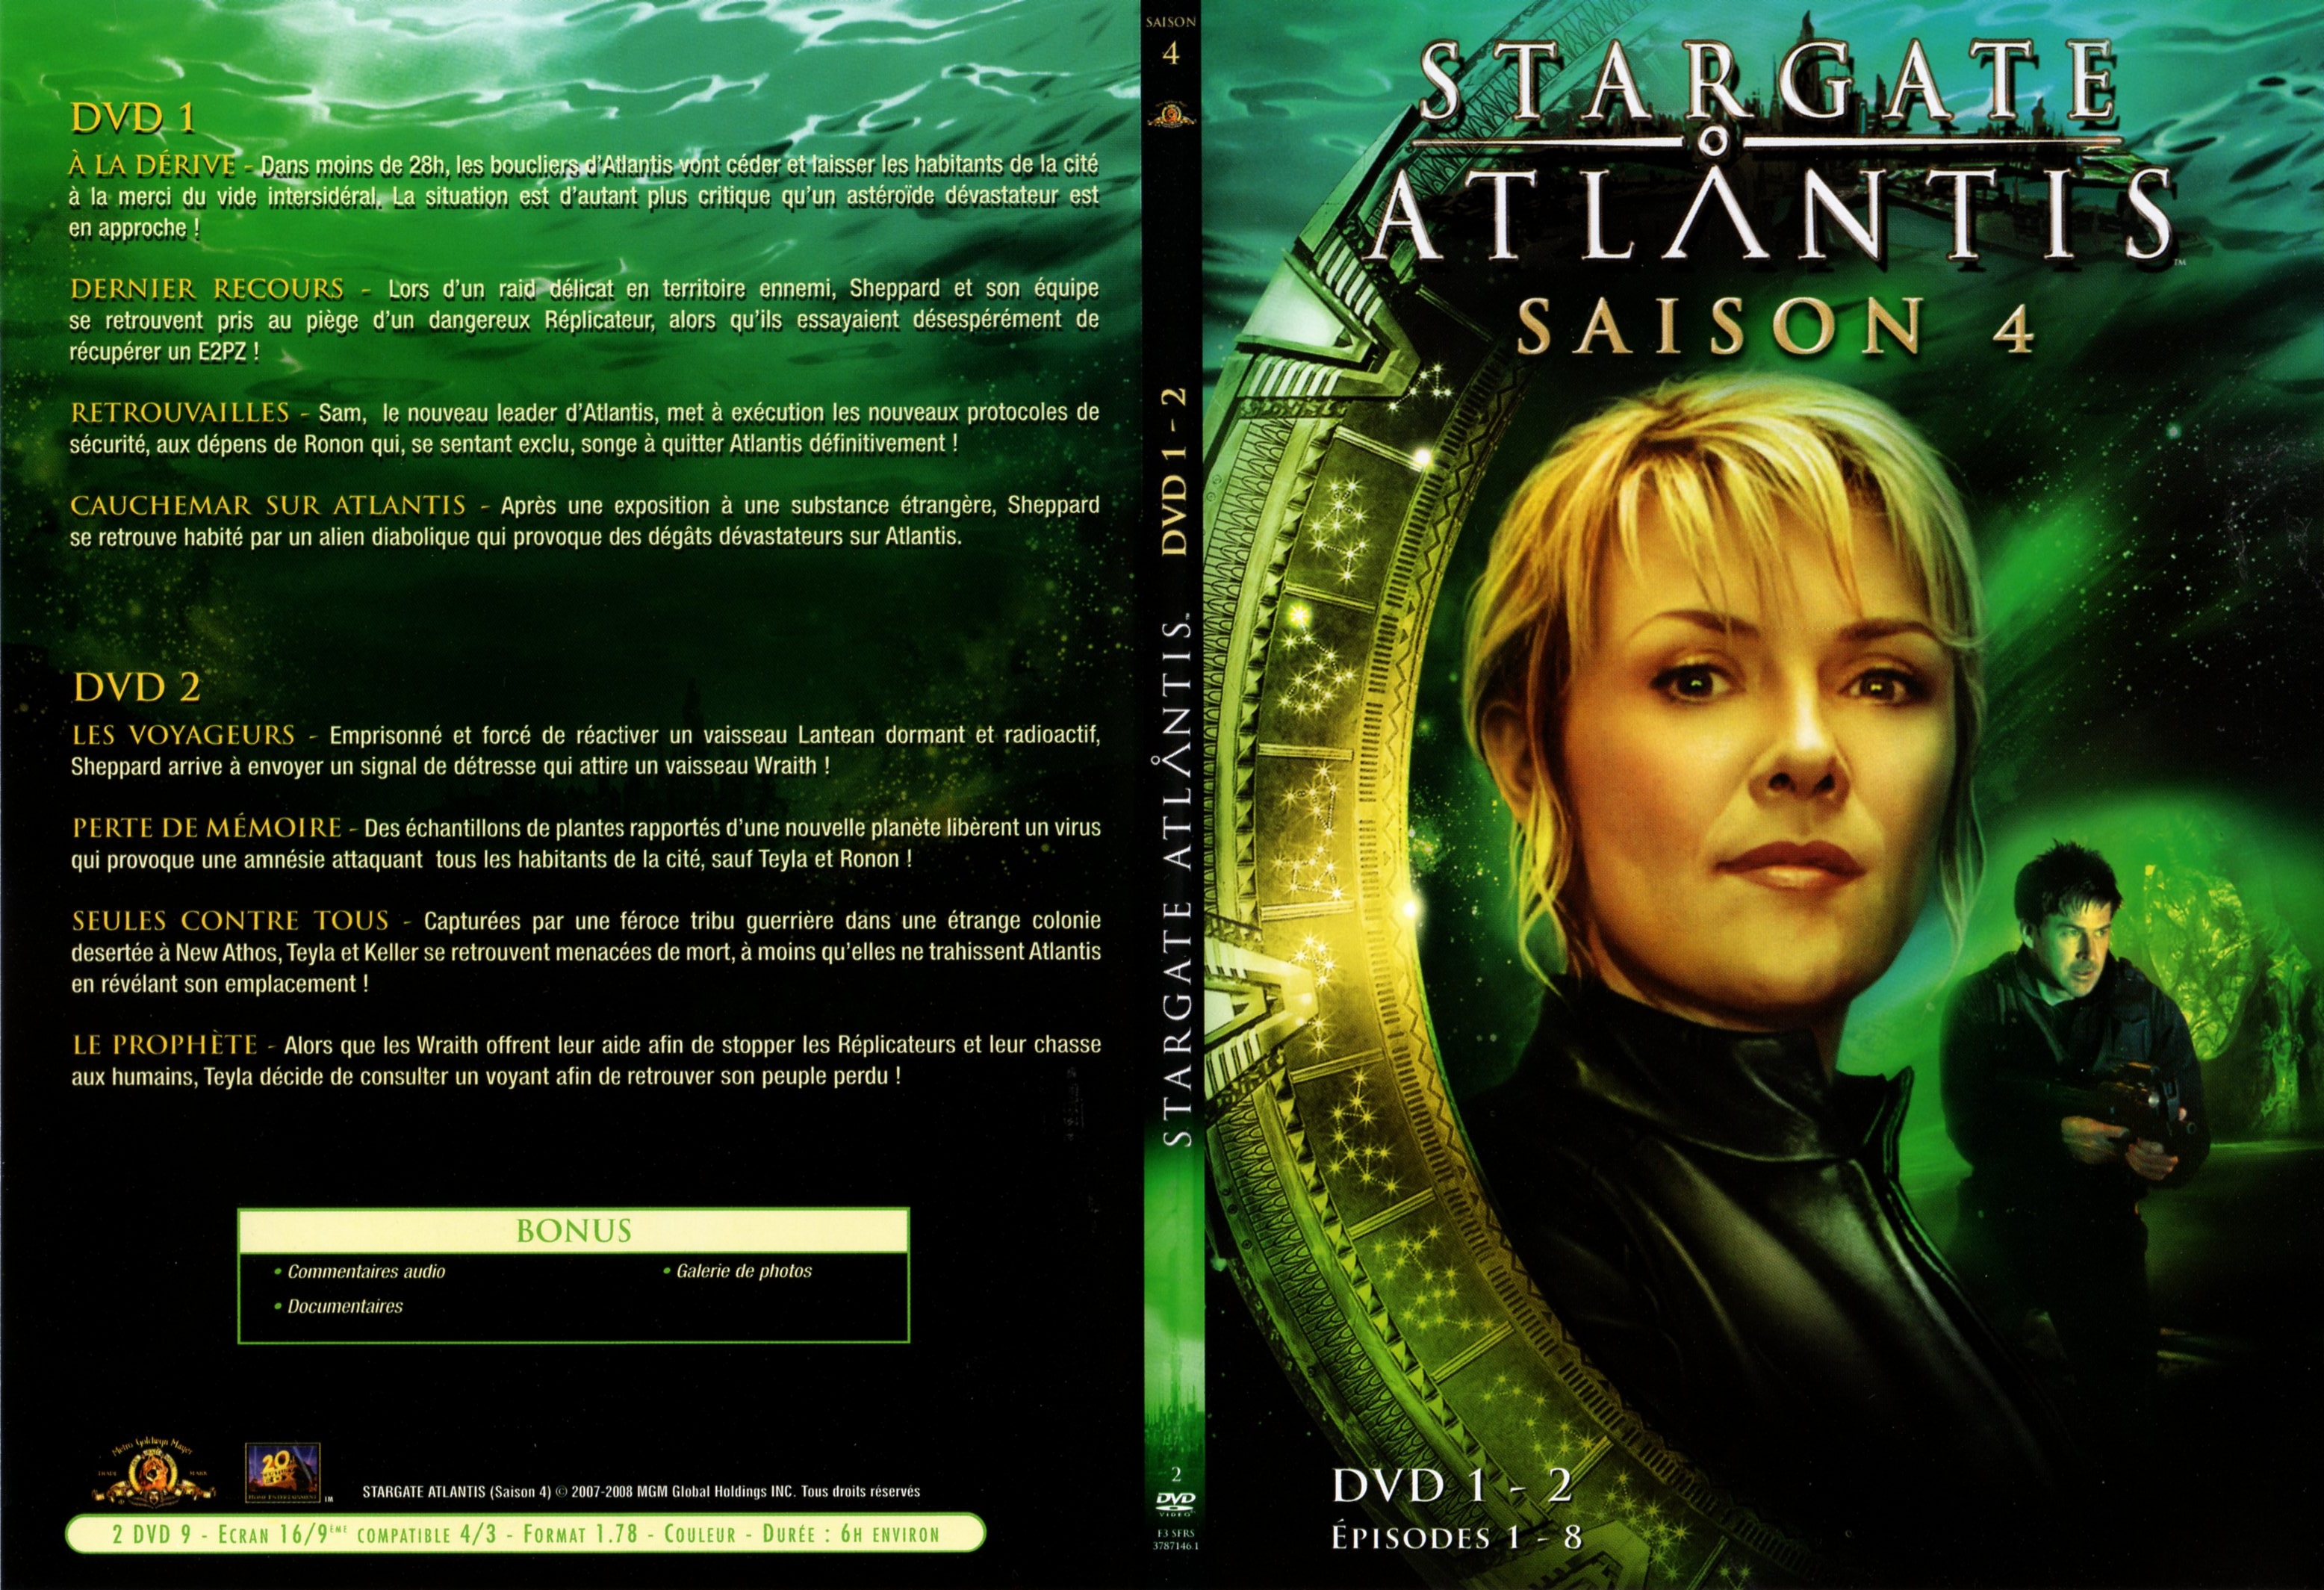 Jaquette DVD Stargate atlantis saison 4 DVD 1